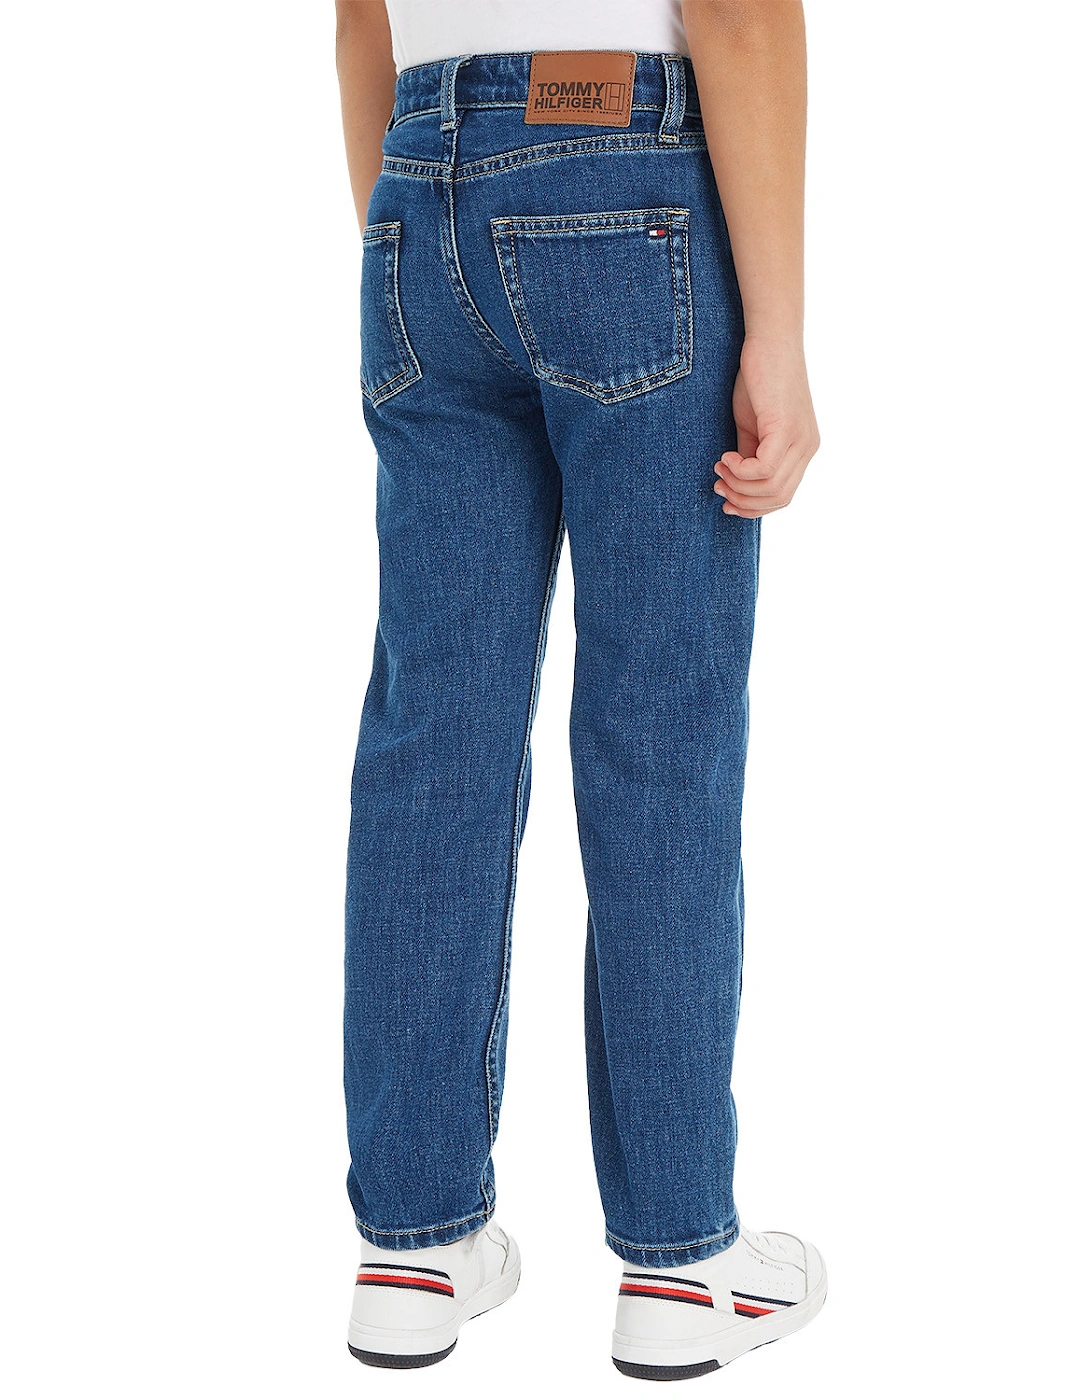 Juniors Clean Wash Denim Jeans (Blue)